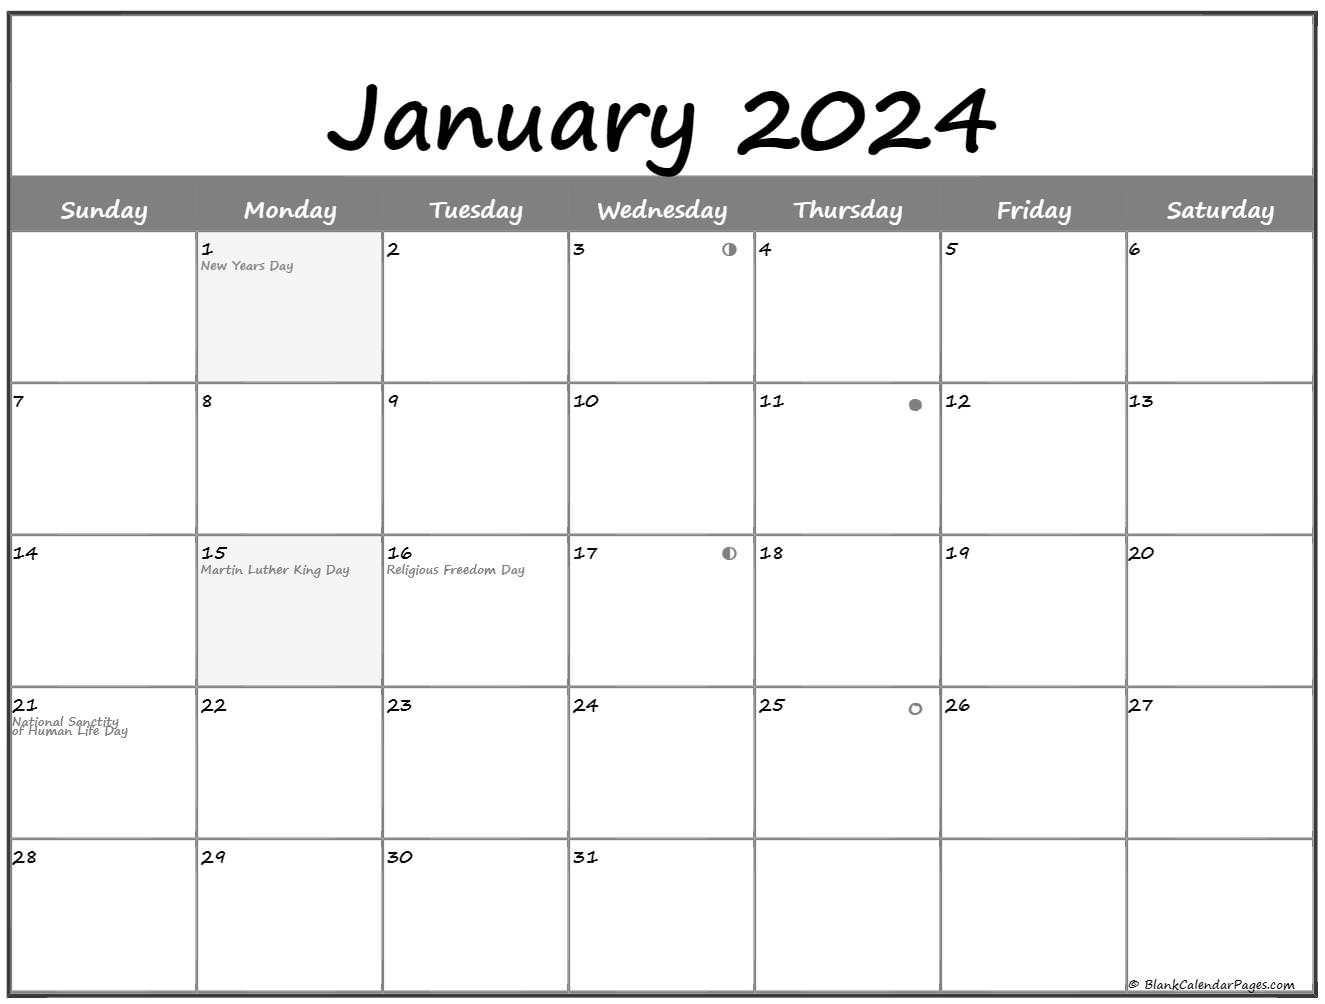 January 2023 Lunar Calendar | Moon Phase Calendar